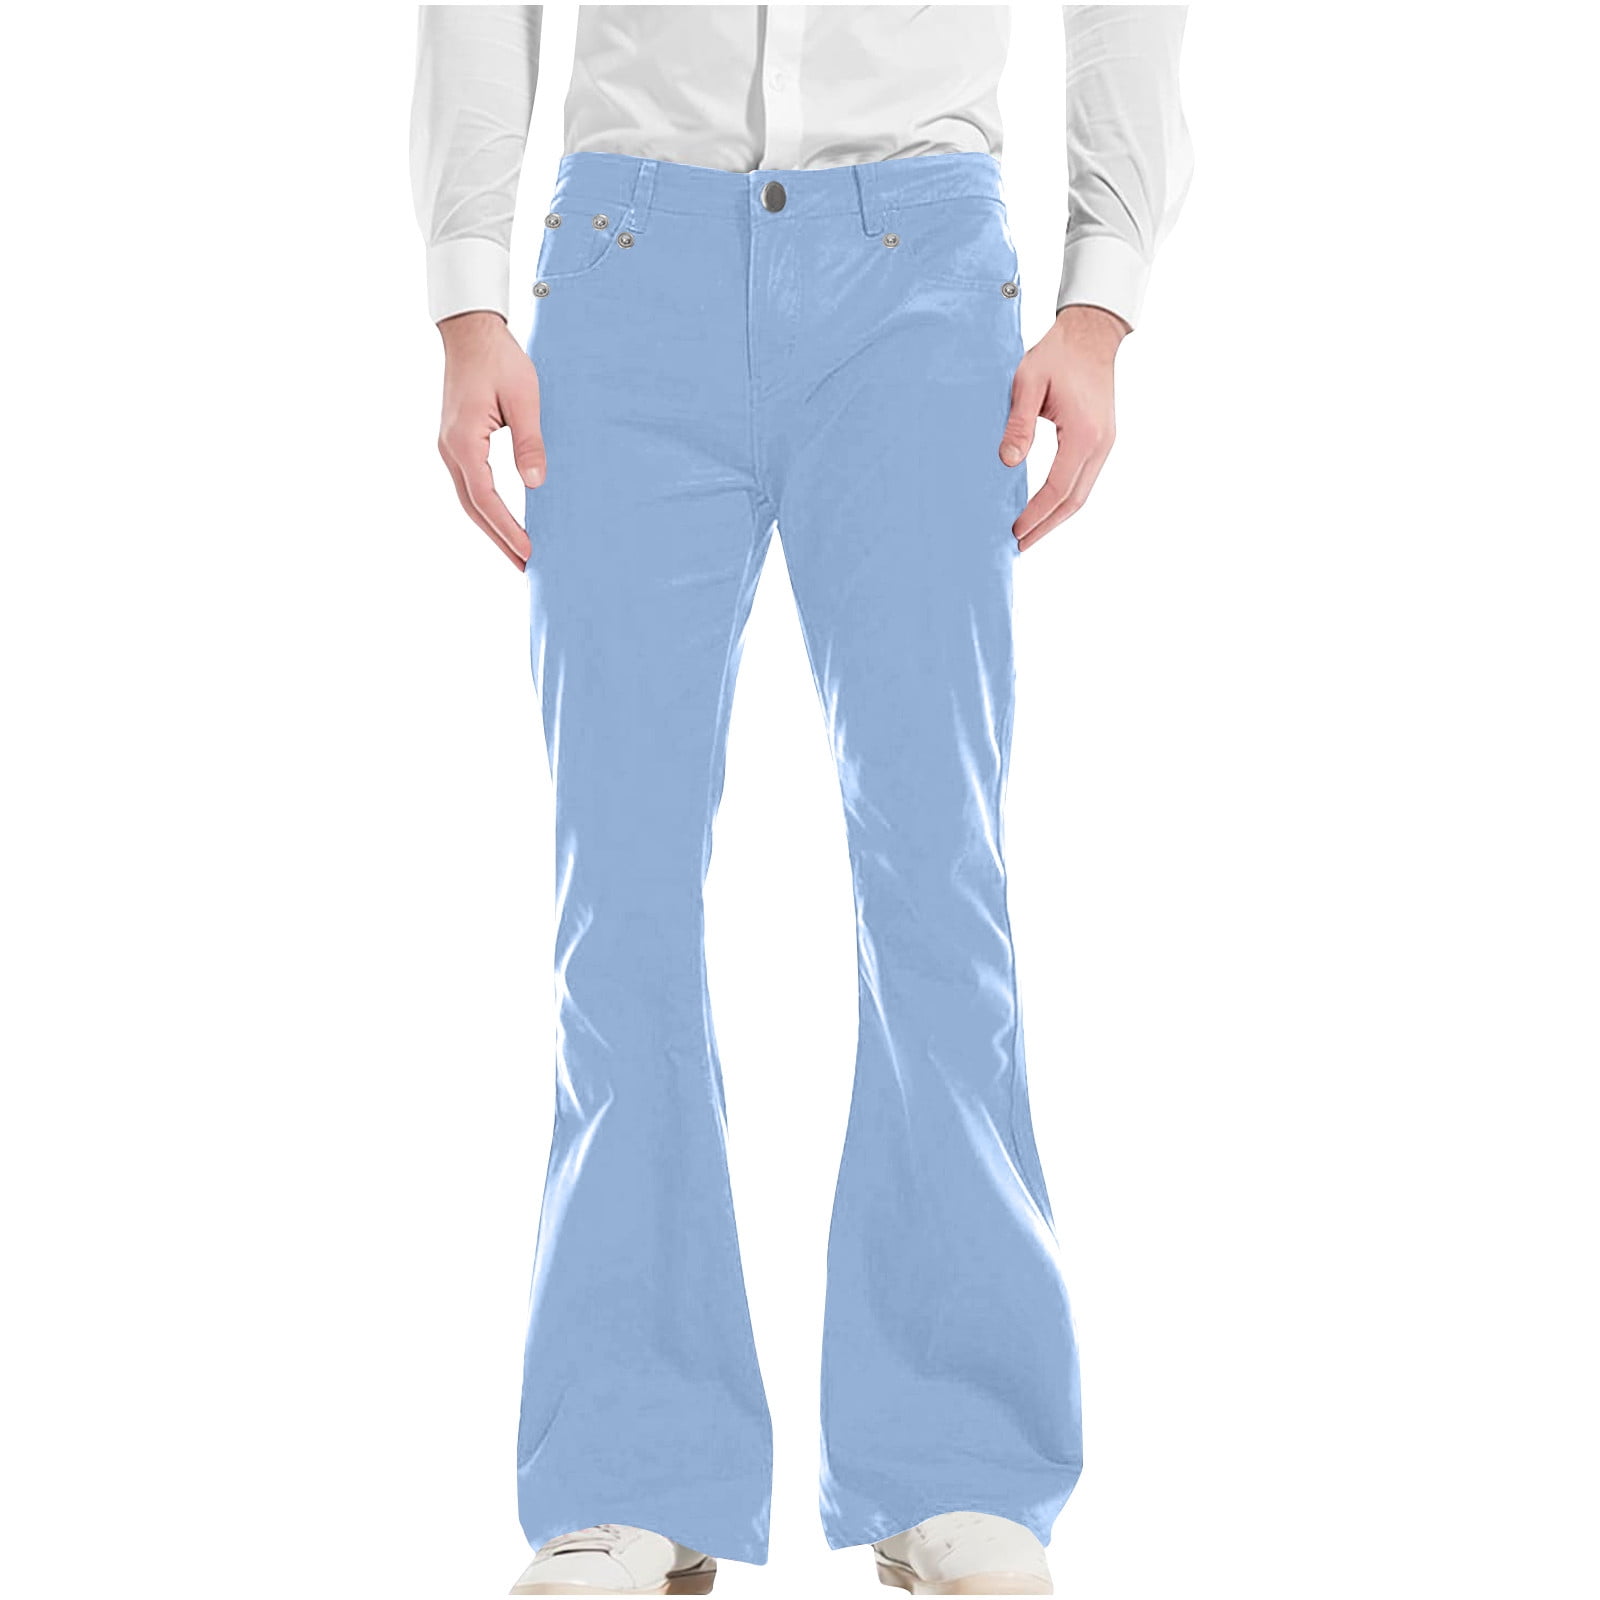 70s Disco Pants for Men,Mens Bell Bottom Jeans Pants,60s 70s Bell